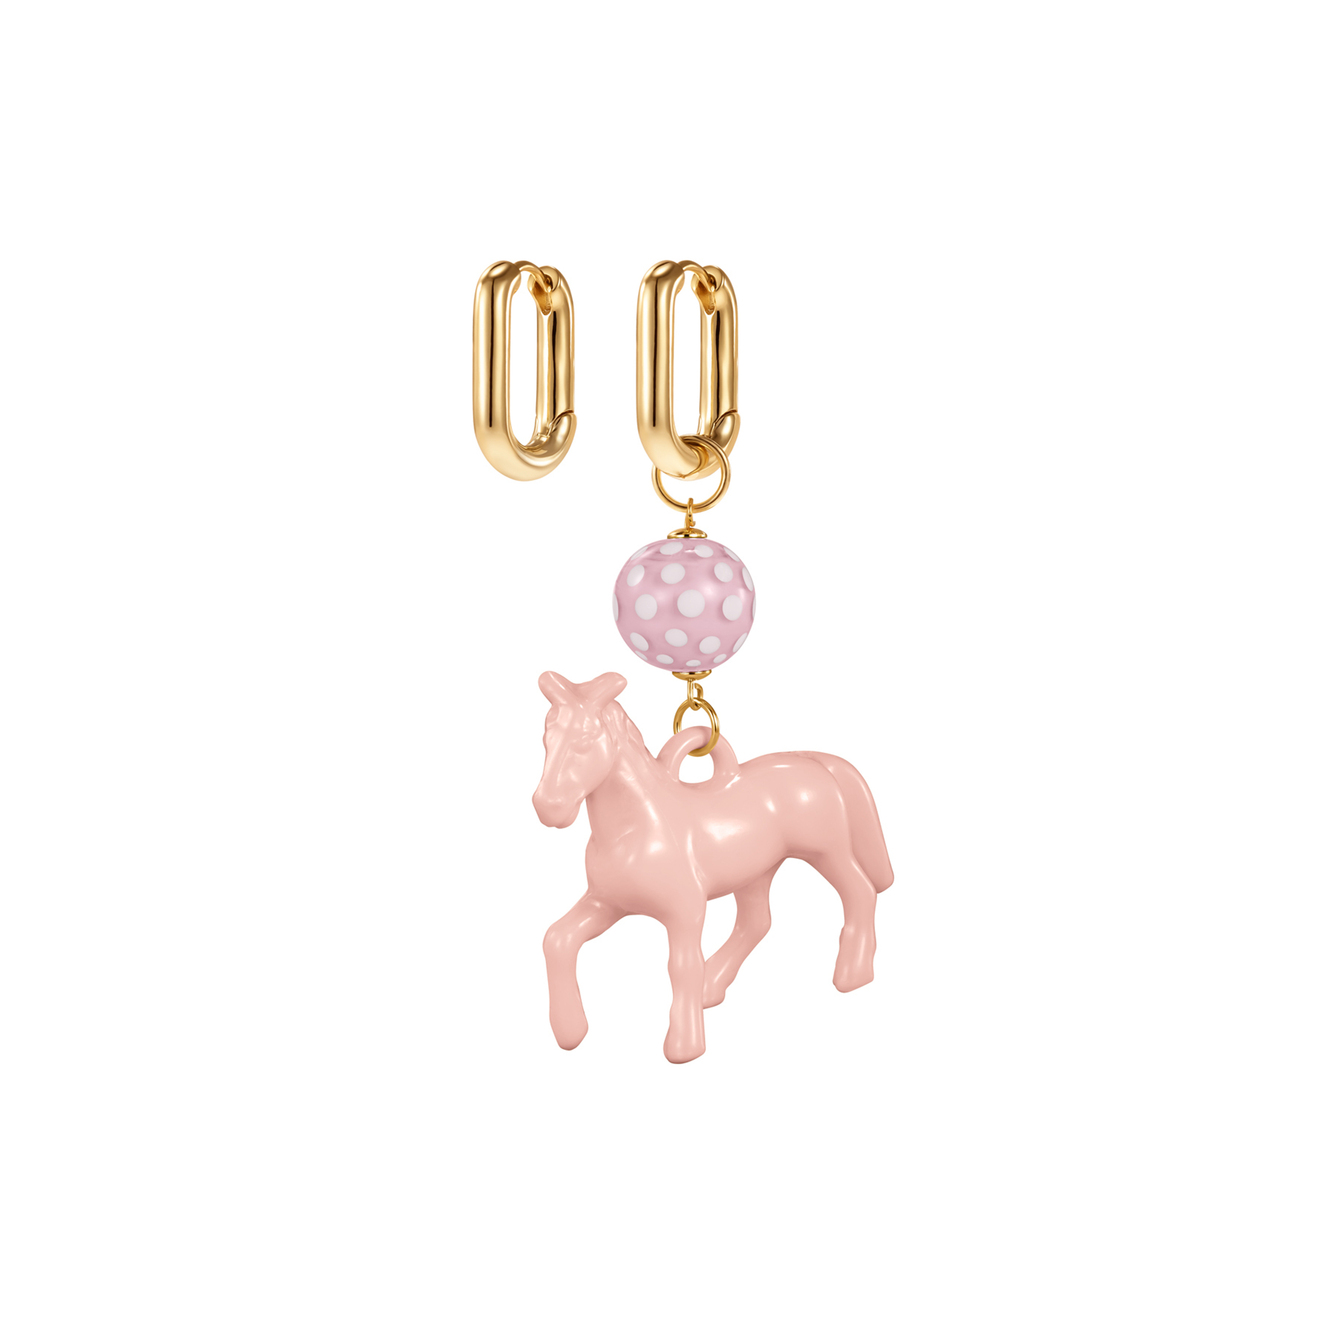 Kotlo Studio Серьги с розовой лошадкой и бусиной Мурано kotlo studio fuchsia horse золотистые серьги с ярко розовой лошадкой и синей бусиной мурано